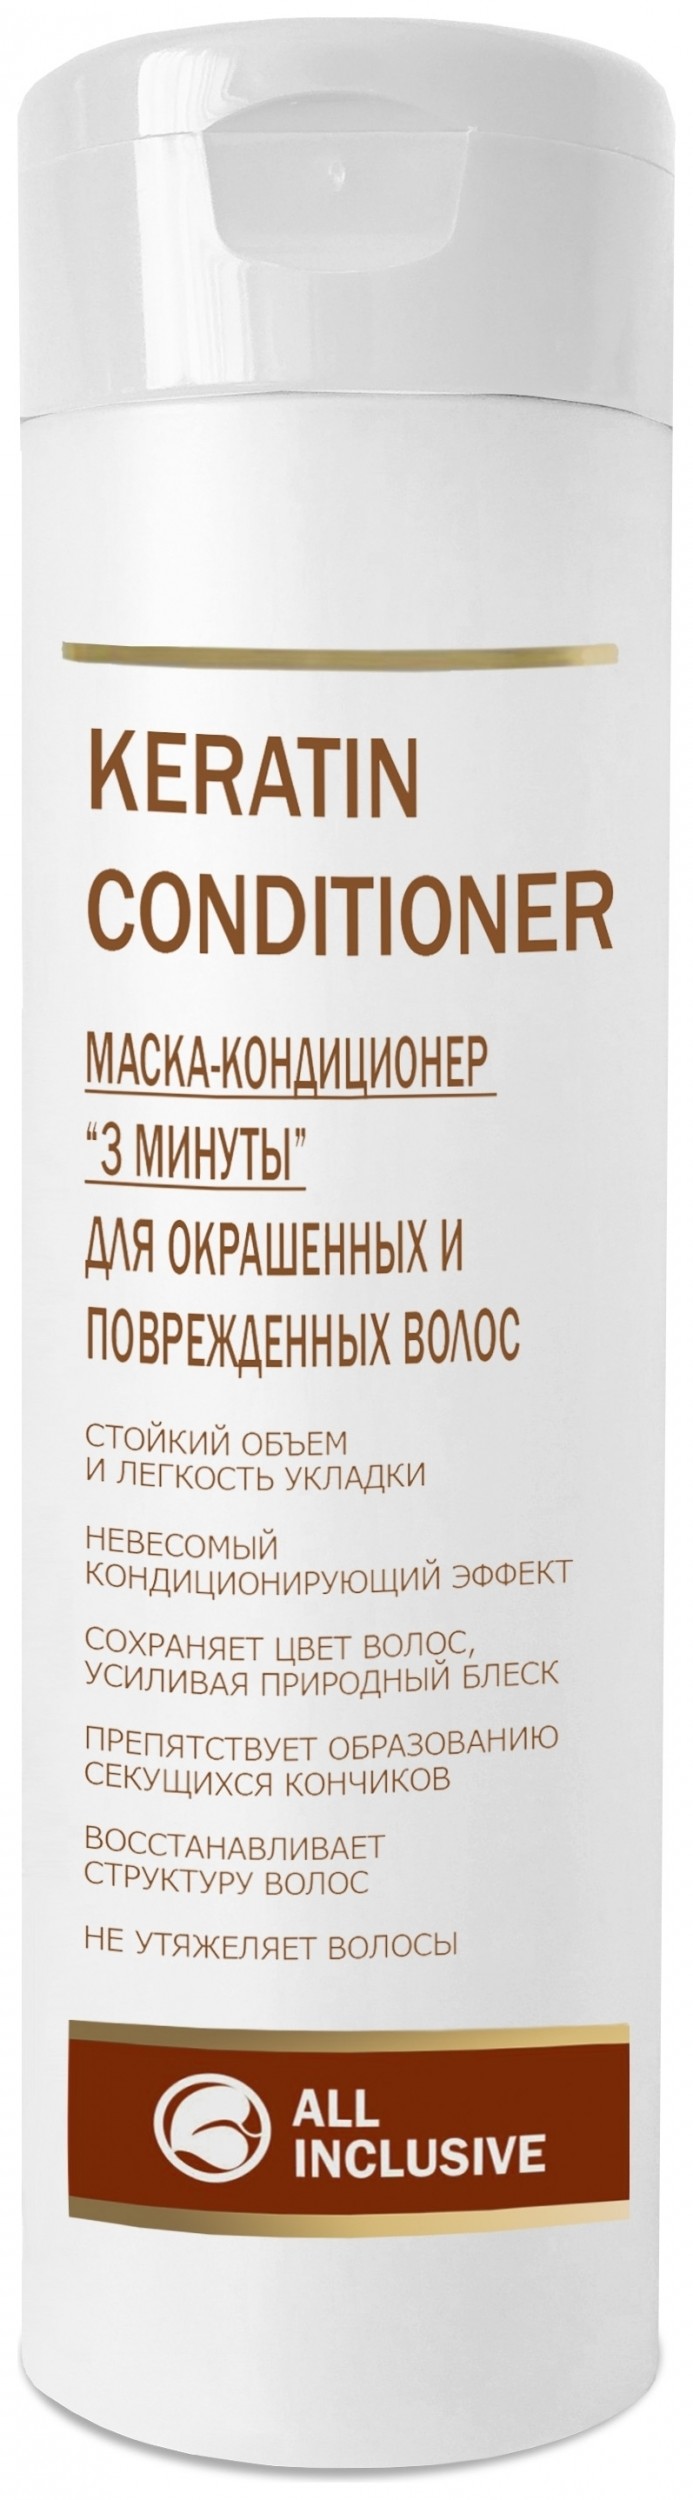 Маска-кондиционер для окрашенных и повреждённых волос 3 минуты Keratin Conditioner